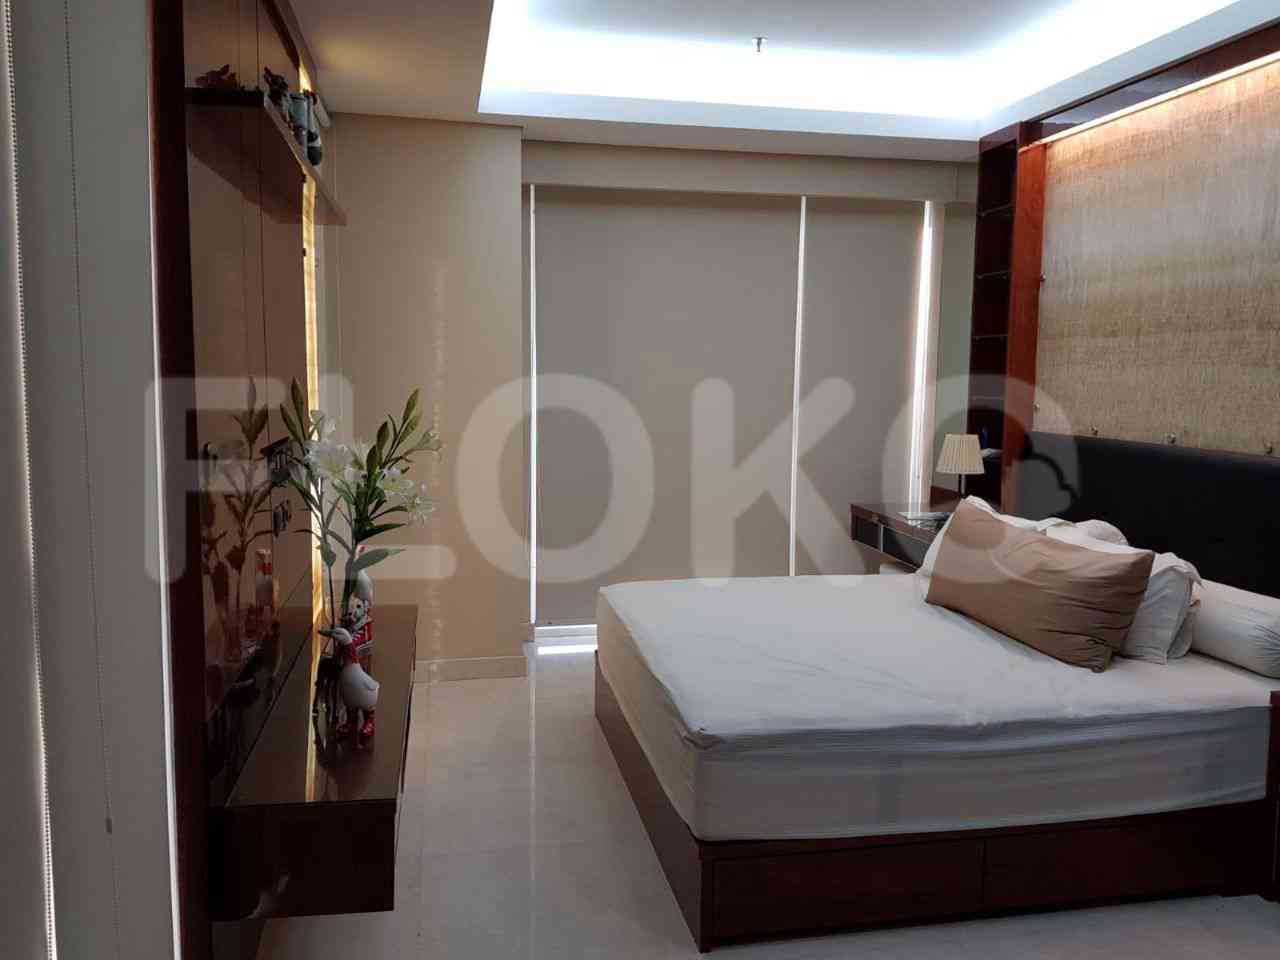 Tipe 2 Kamar Tidur di Lantai 17 untuk disewakan di Pondok Indah Residence - fpobce 1